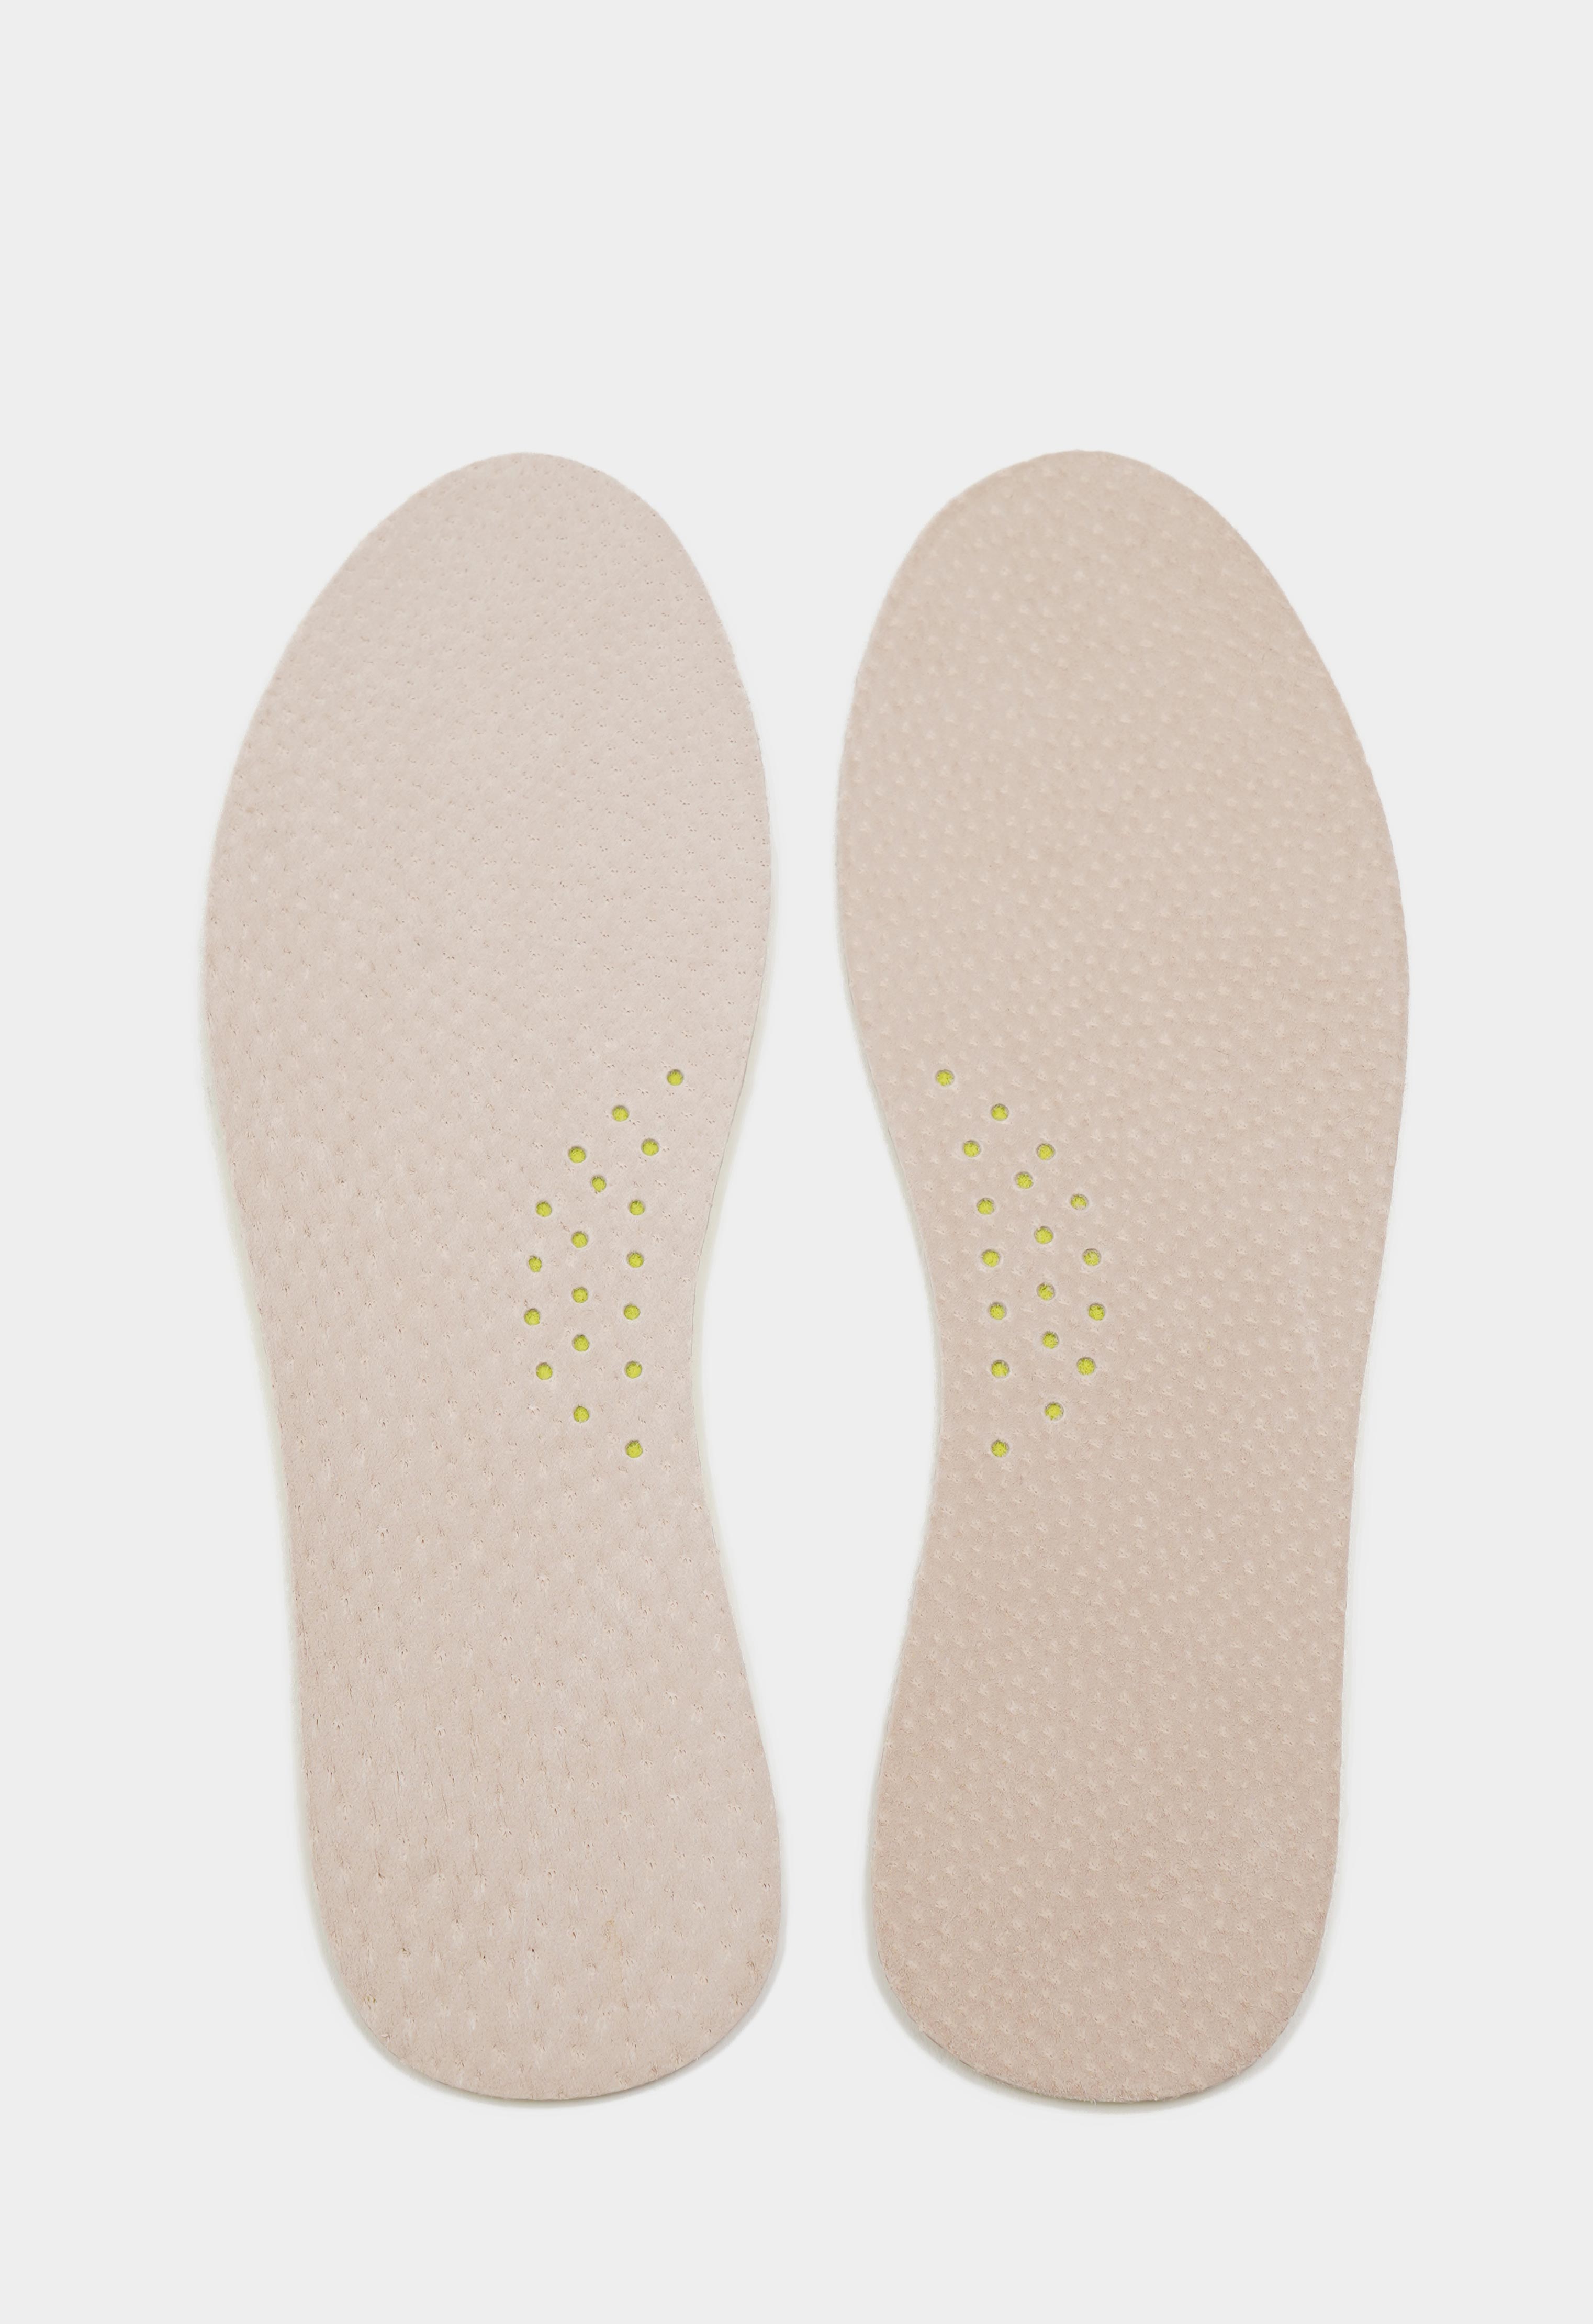 Уход за обувью 20-8958 TARRAGO - Стельки LEDER FOAM, натуральная кожа/пеноматериал, р.39/40 уход за обувью 20 1536 tarrago набор в кожаном футляре